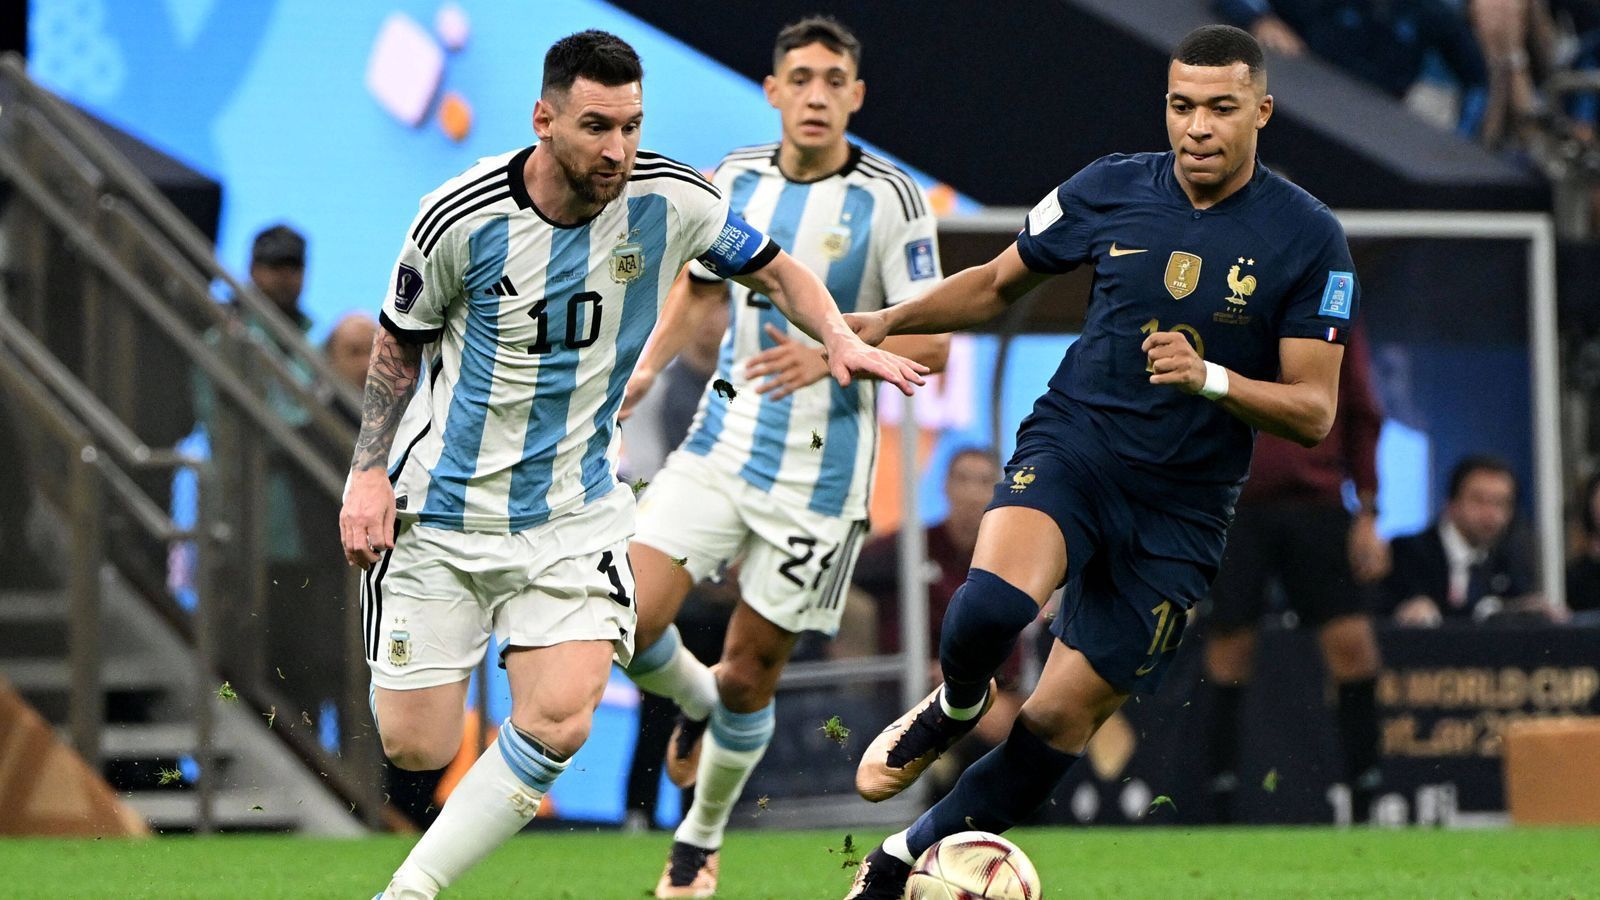 
                <strong>Mbappe und Messi ballern: Katar 2022 torreichste WM der Geschichte</strong><br>
                Die WM 2022 ist die bisher torreichste Weltmeisterschaft der Geschichte. Im gesamten Turnierverlauf fielen insgesamt 172 Tore, im Schnitt also rund 3 Tore pro Spiel. Der bisherige Rekord lag bei 171 Treffern, die bei den Weltmeisterschaften 1998 und 2014 erzielt wurden. In Katar krönte sich Argentinien im Finale gegen Frankreich nach einem 4:2 nach Elfmeterschießen zum neuen Weltmeister. Nach Verlängerung hatte es 3:3 gestanden. Auch der 6:2-Sieg Englands gegen Iran oder das 7:0 von Spanien gegen Costa Rica in der Gruppenphase haben wohl zum neuen Torrekord beigetragen. Torschützenkönig des Turniers wurde Frankreichs Kylian Mbappe (rechts) mit acht Treffern in sieben Spielen.   
              